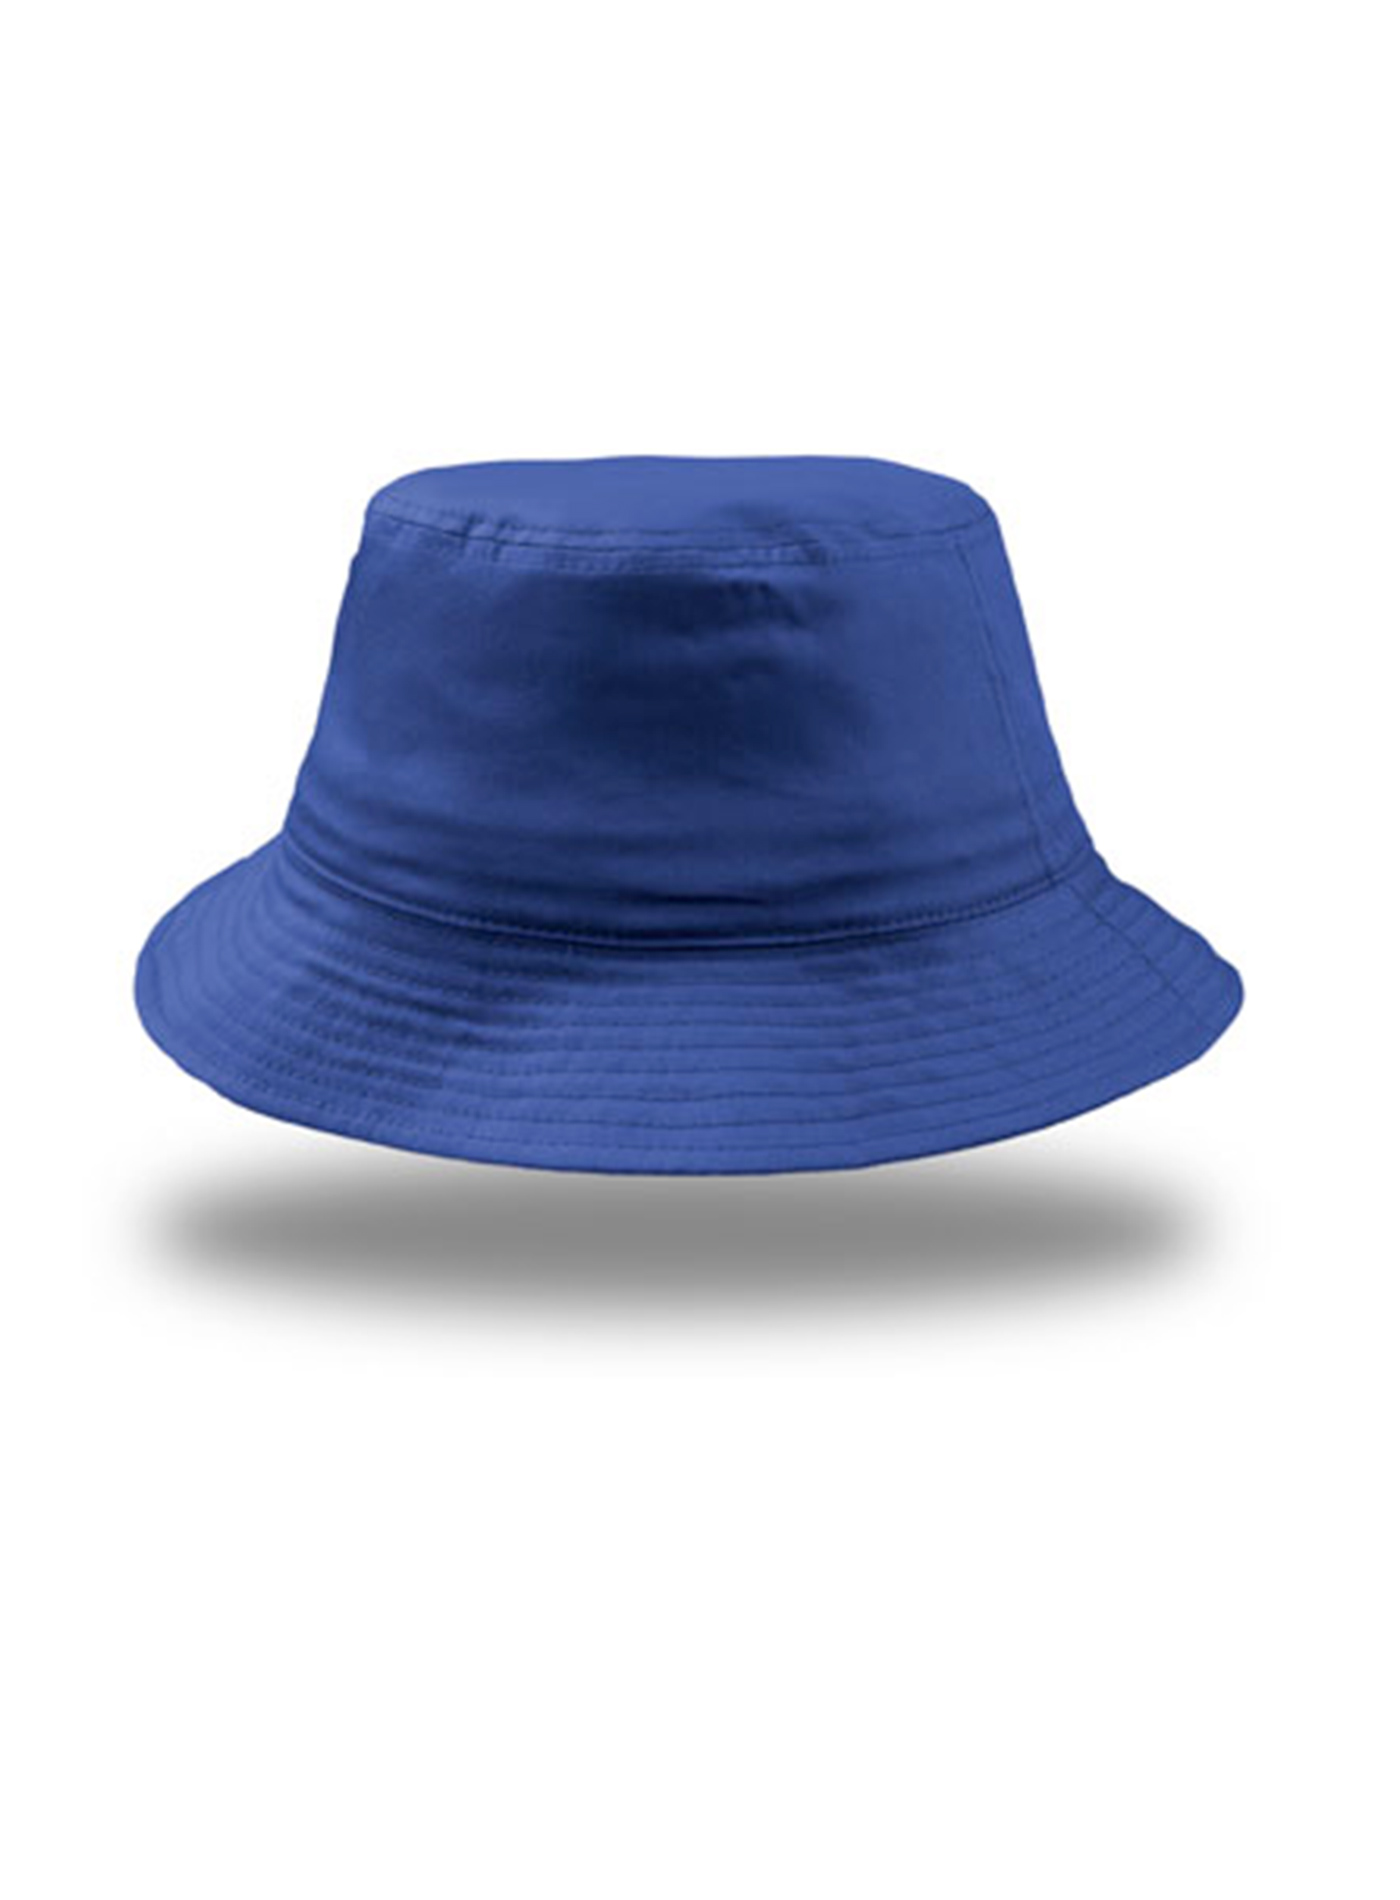 Bavlněný klobouk Atlantis - Královská modrá univerzal